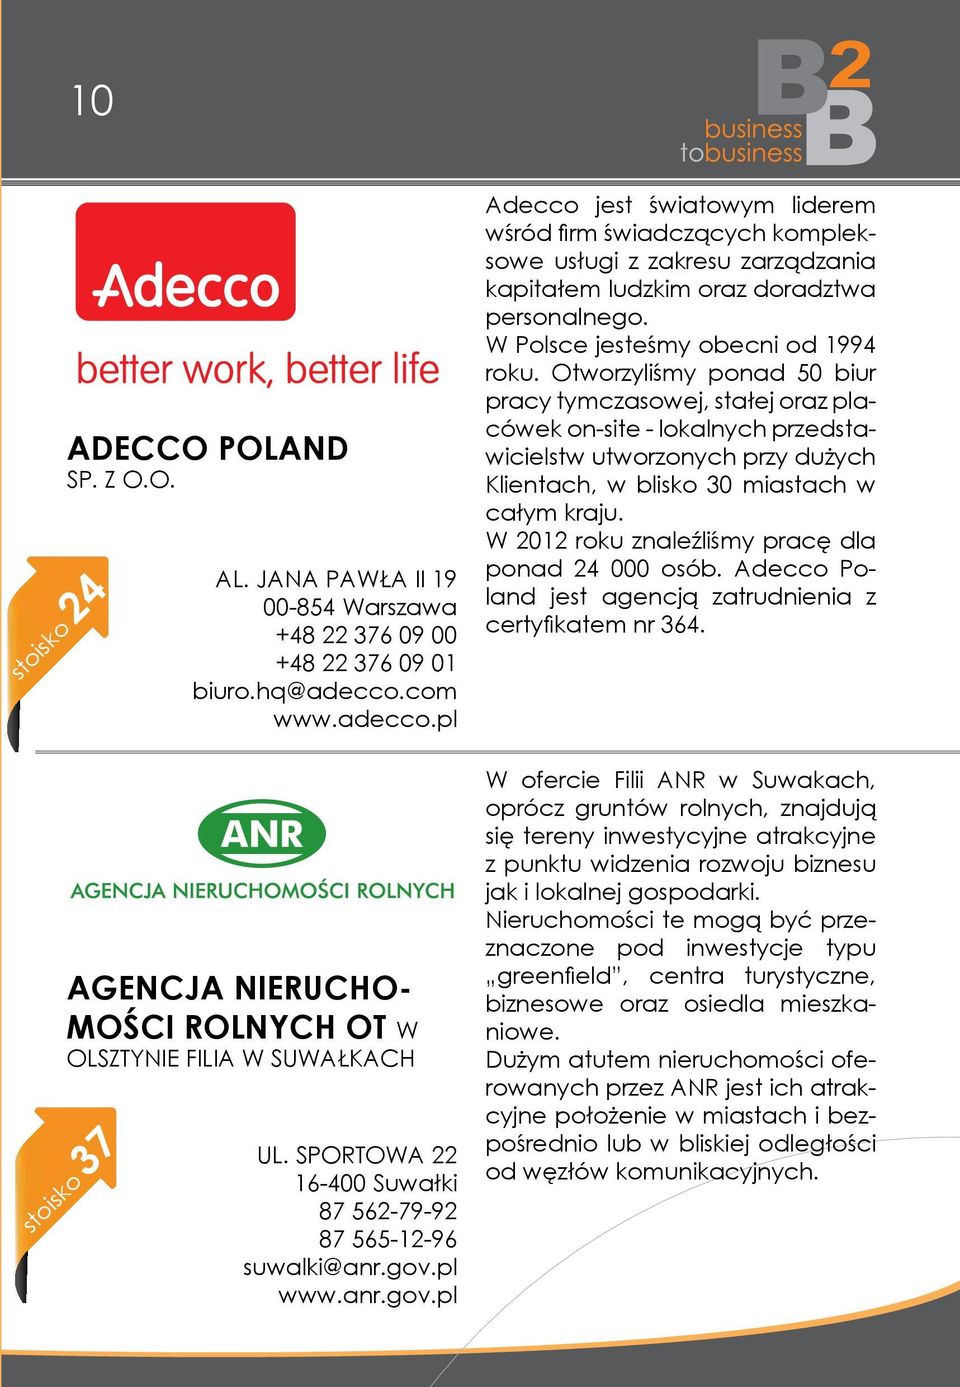 pl www.anr.gov.pl Adecco jest światowym liderem wśród firm świadczących kompleksowe usługi z zakresu zarządzania kapitałem ludzkim oraz doradztwa personalnego. W Polsce jesteśmy obecni od 1994 roku.